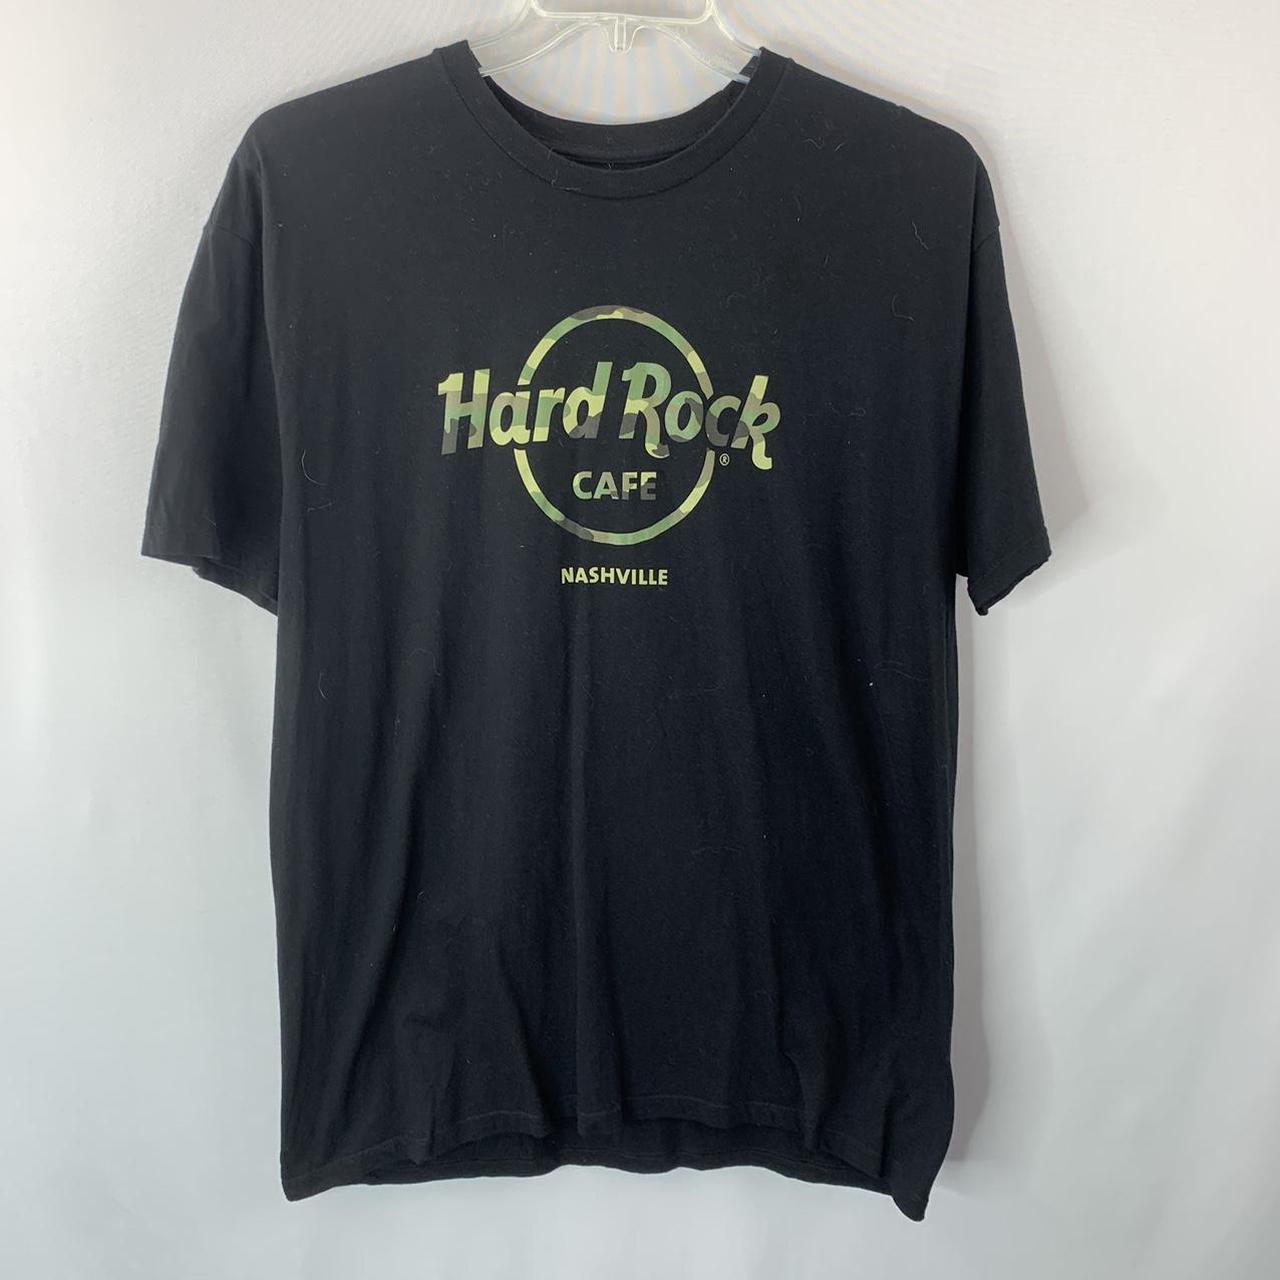 🖤 Hard Rock Cafe Camo Nashville T-shirt 🖤 - In... - Depop